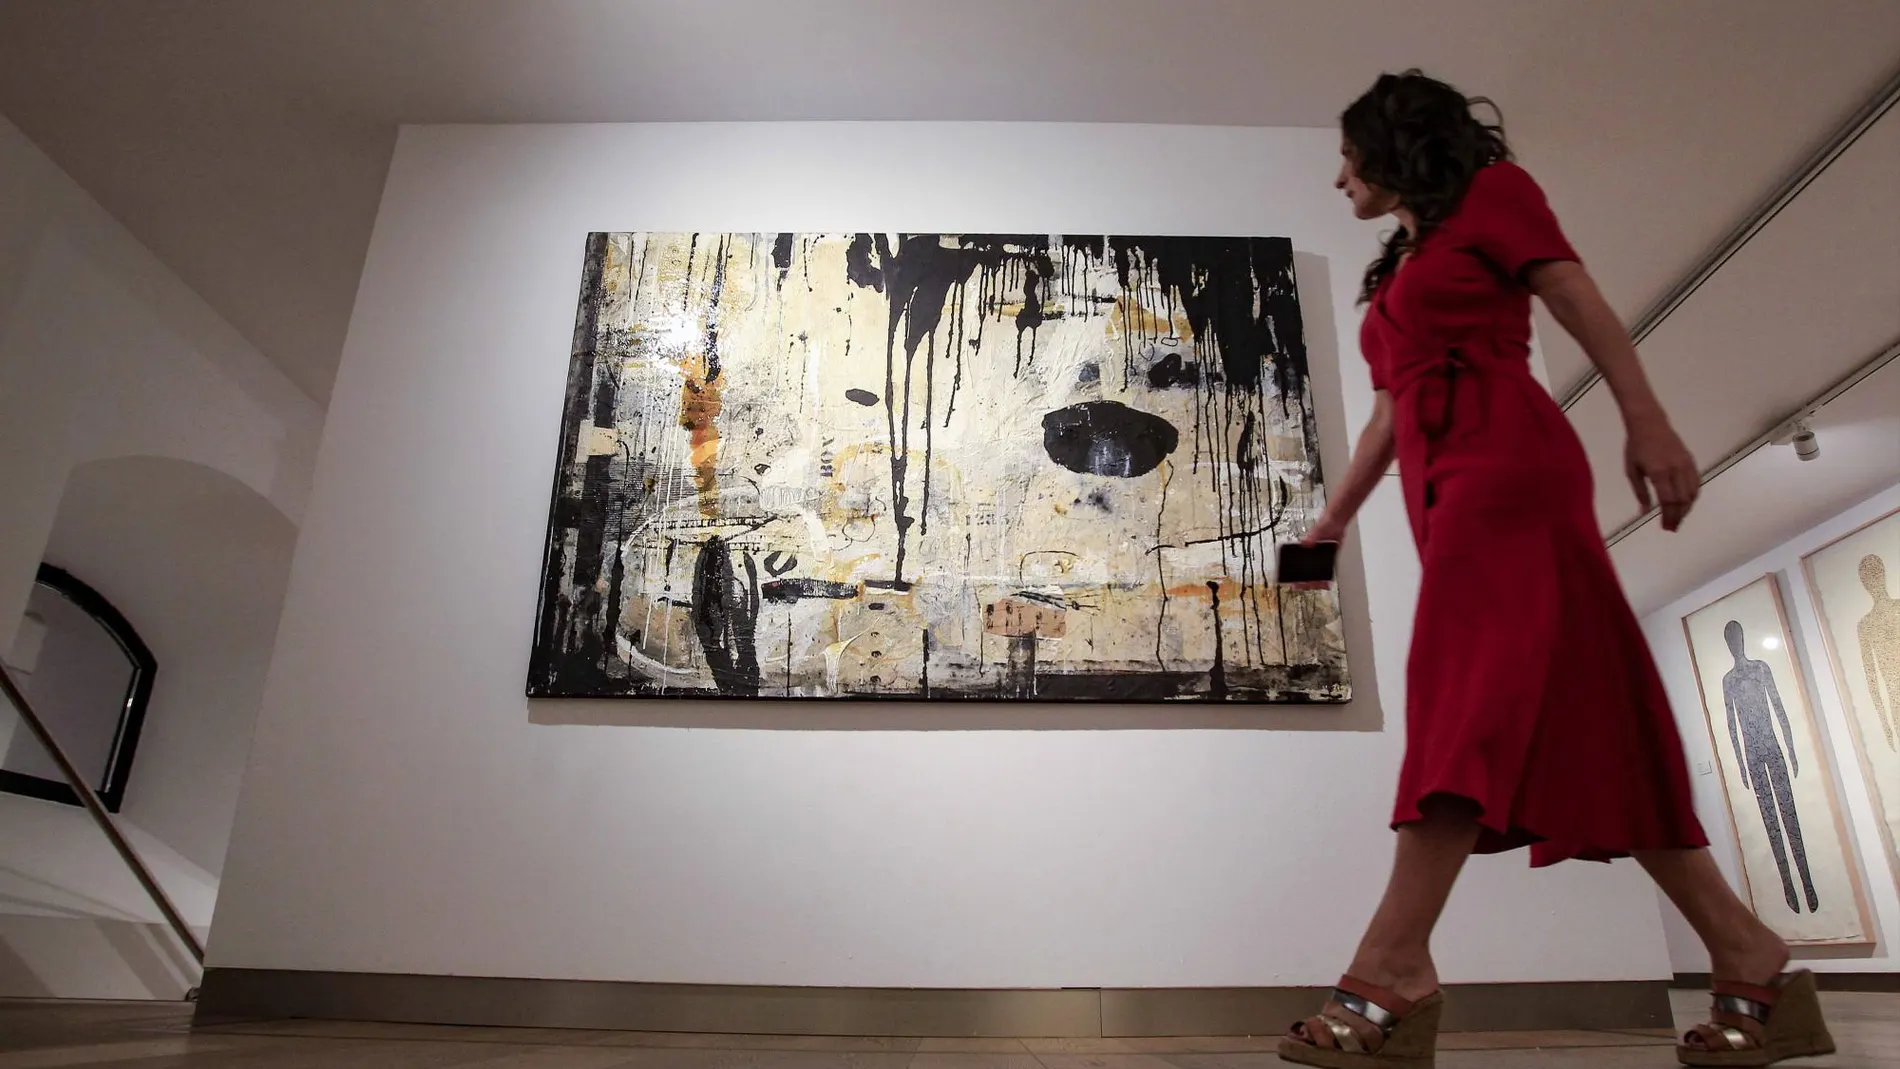 La Fundación Cajasol recopila 30 obras de 25 artistas de renombre / Fotografías: Manuel Olmedo